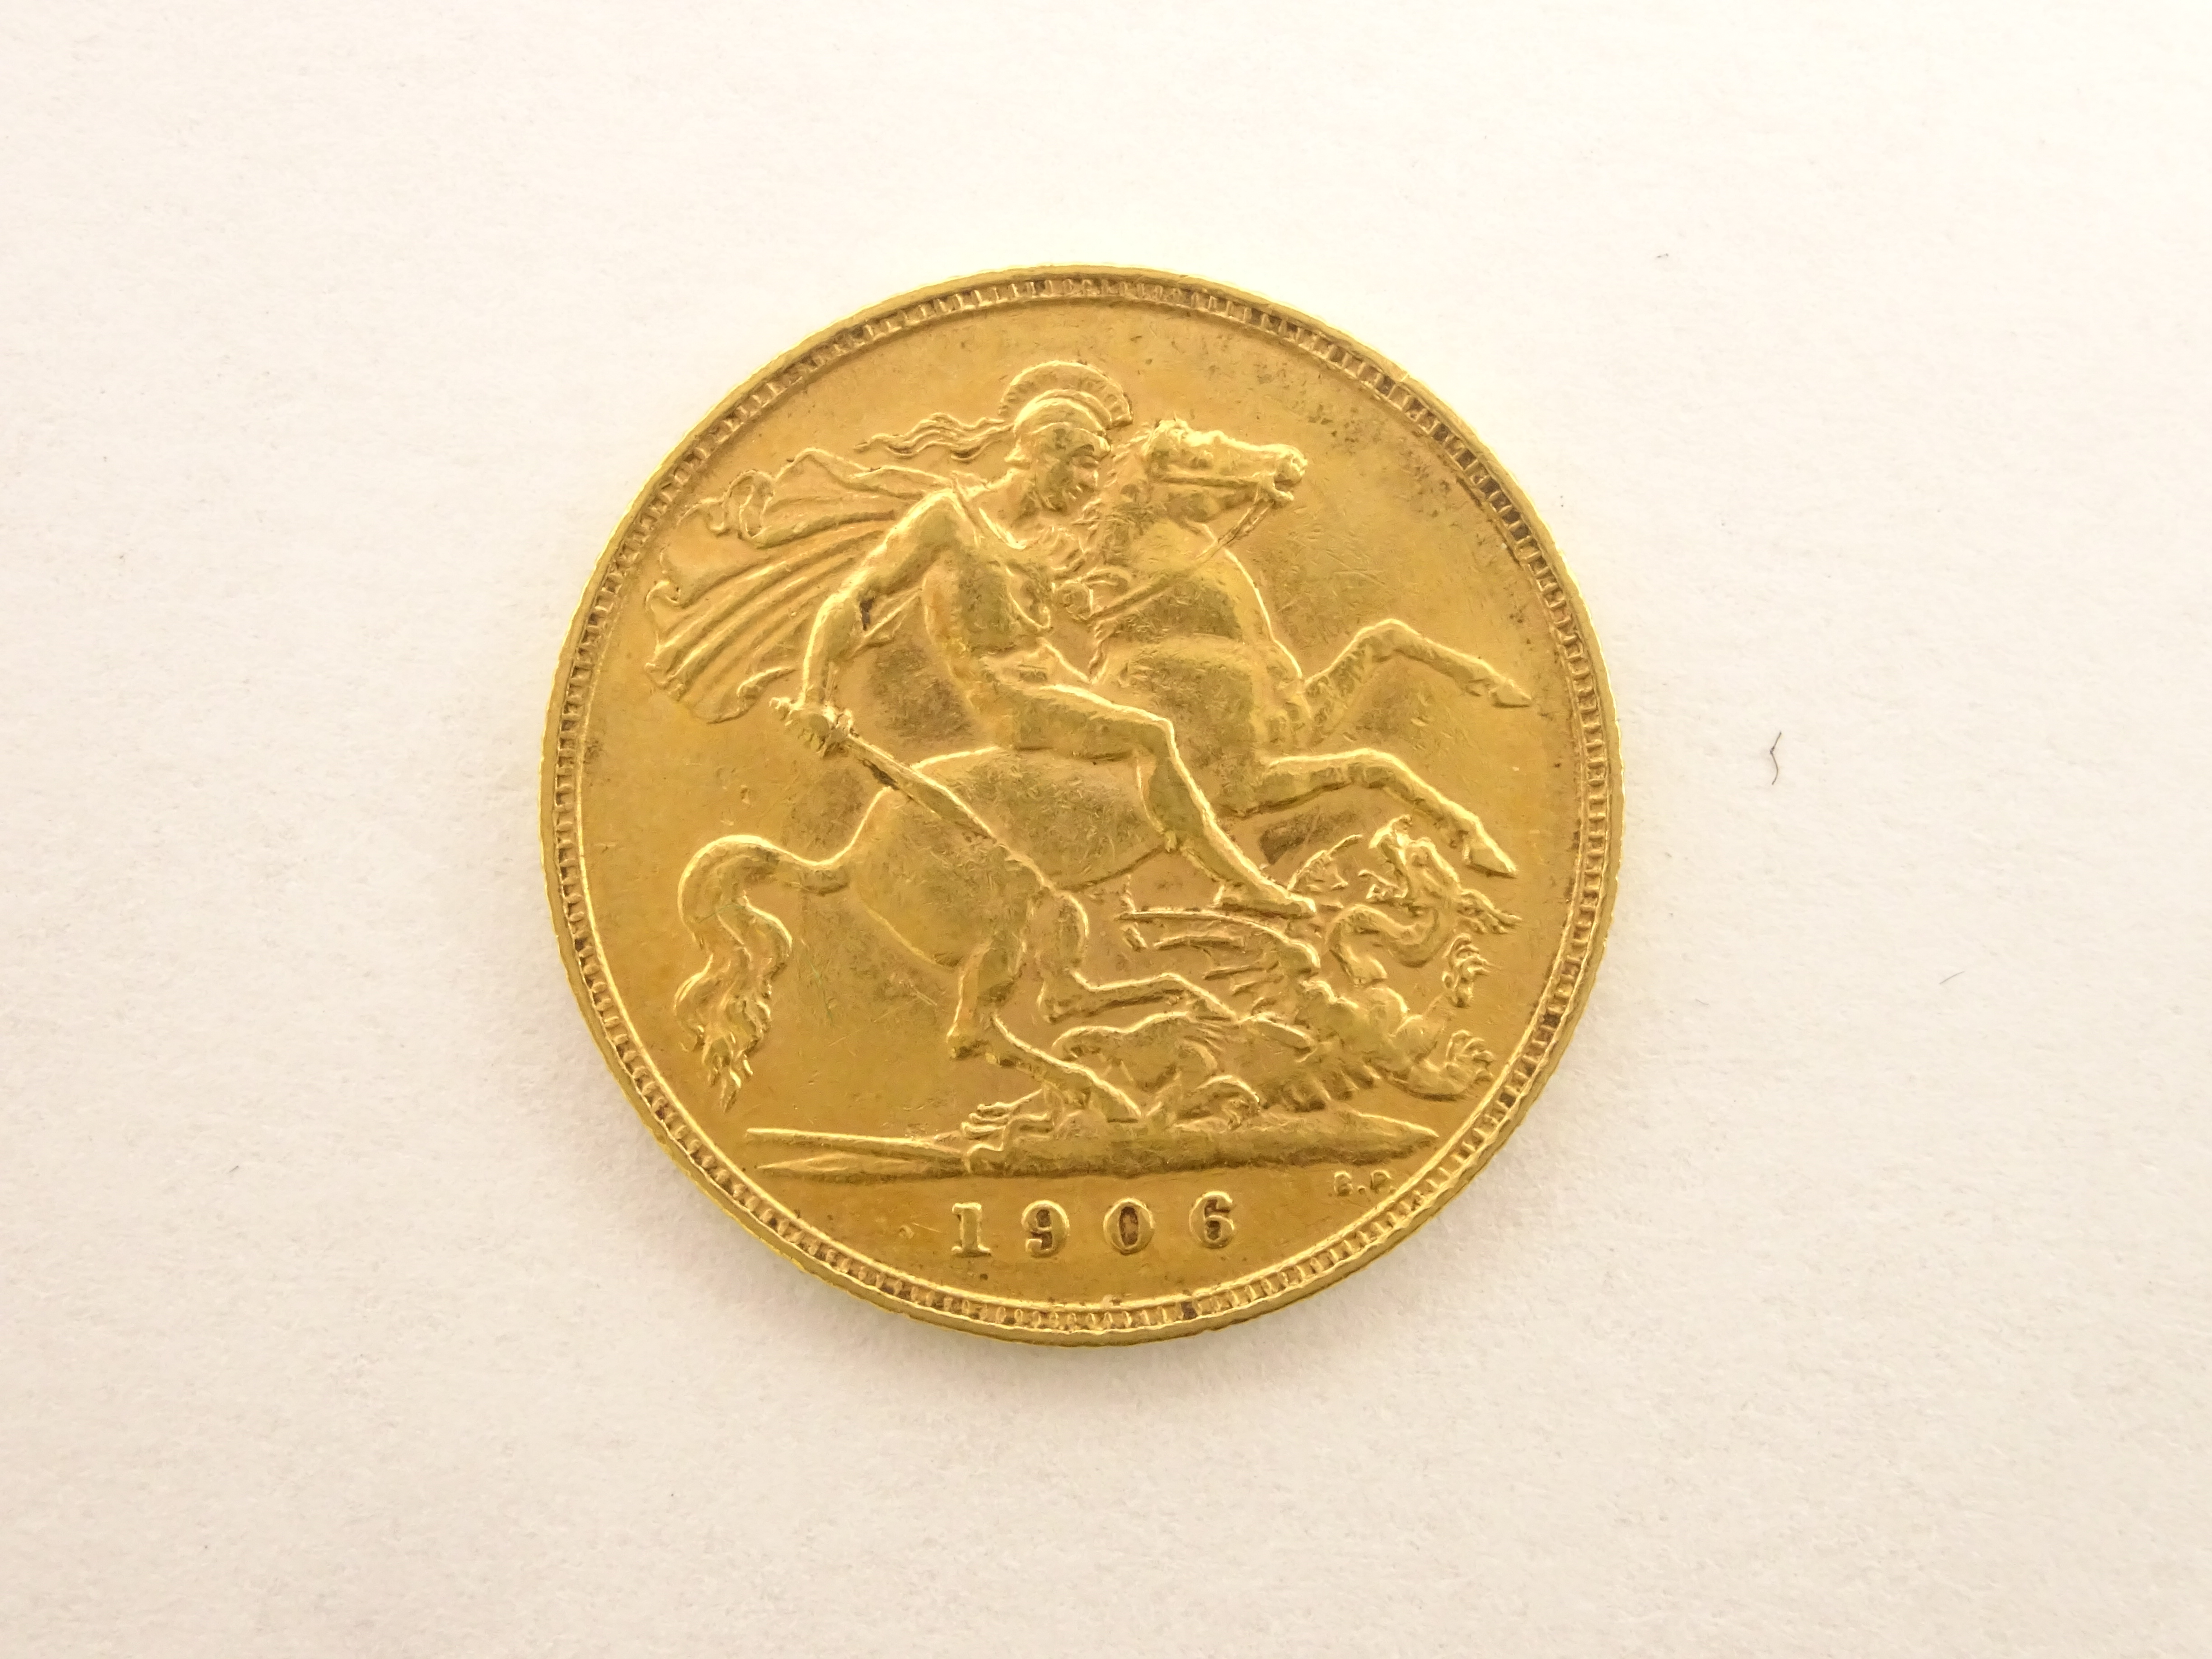 King Edward VII 1906 gold half sovereign - Image 2 of 2